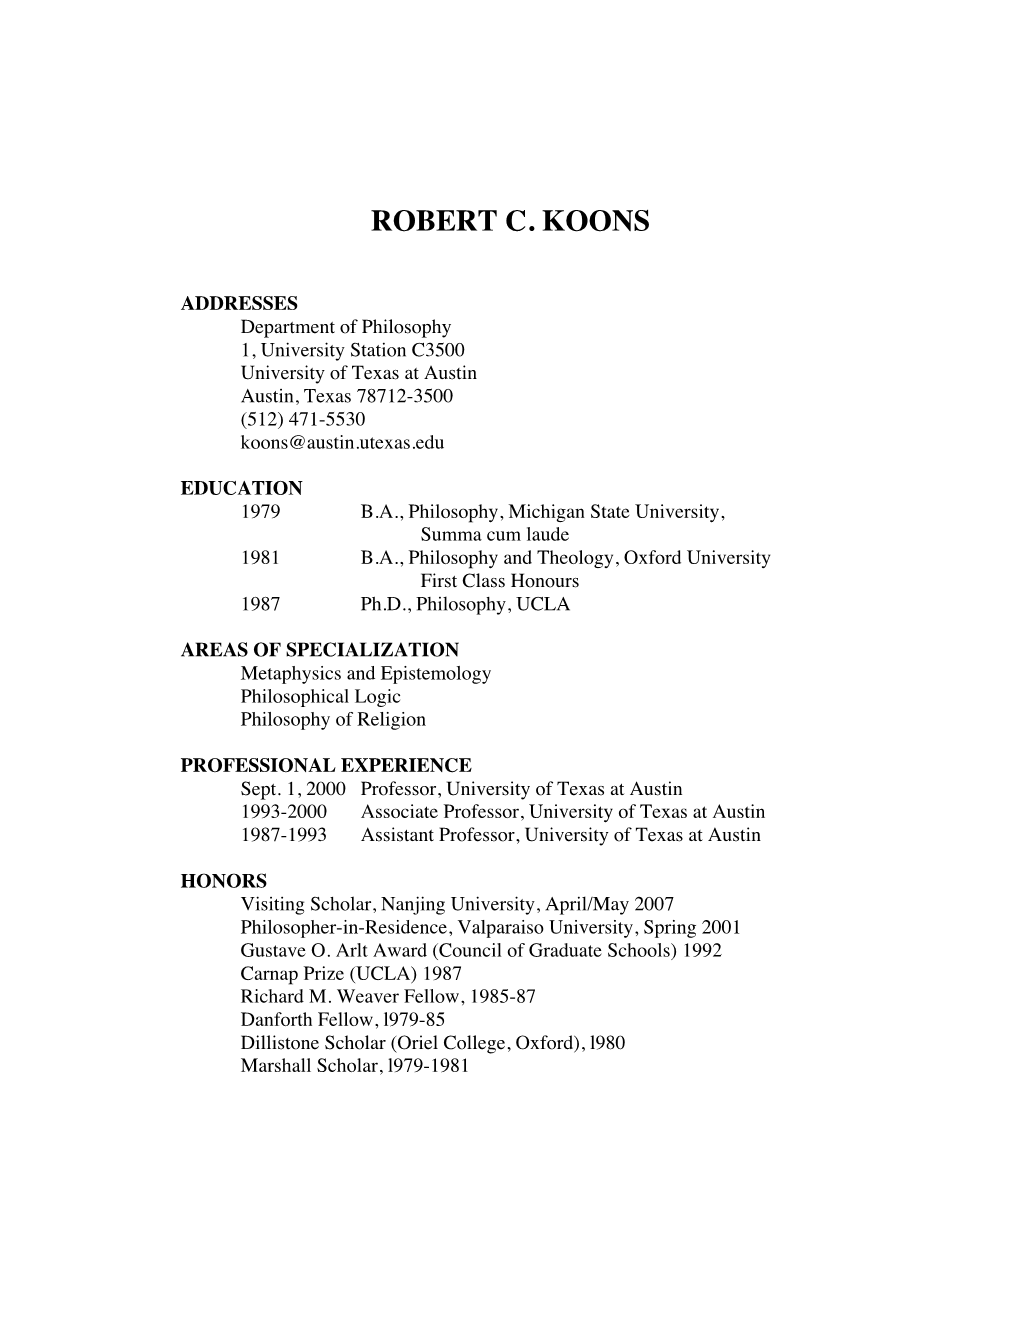 Robert C. Koons